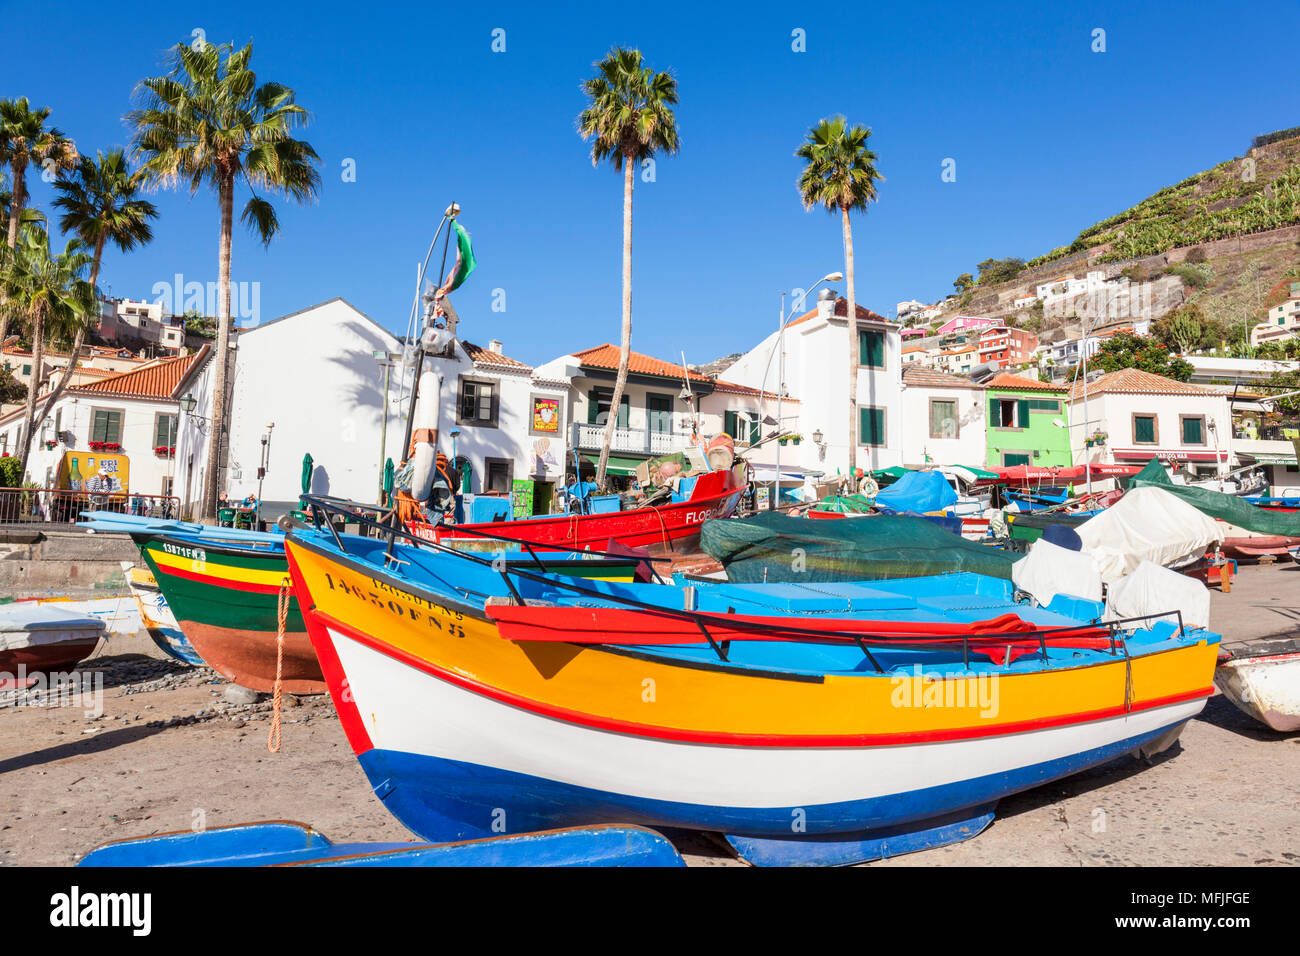 Coloridos barcos de pesca tradicional en la playa en el pueblo pesquero de Camara de Lobos, Madeira, Portugal, el Atlántico, Europa Foto de stock